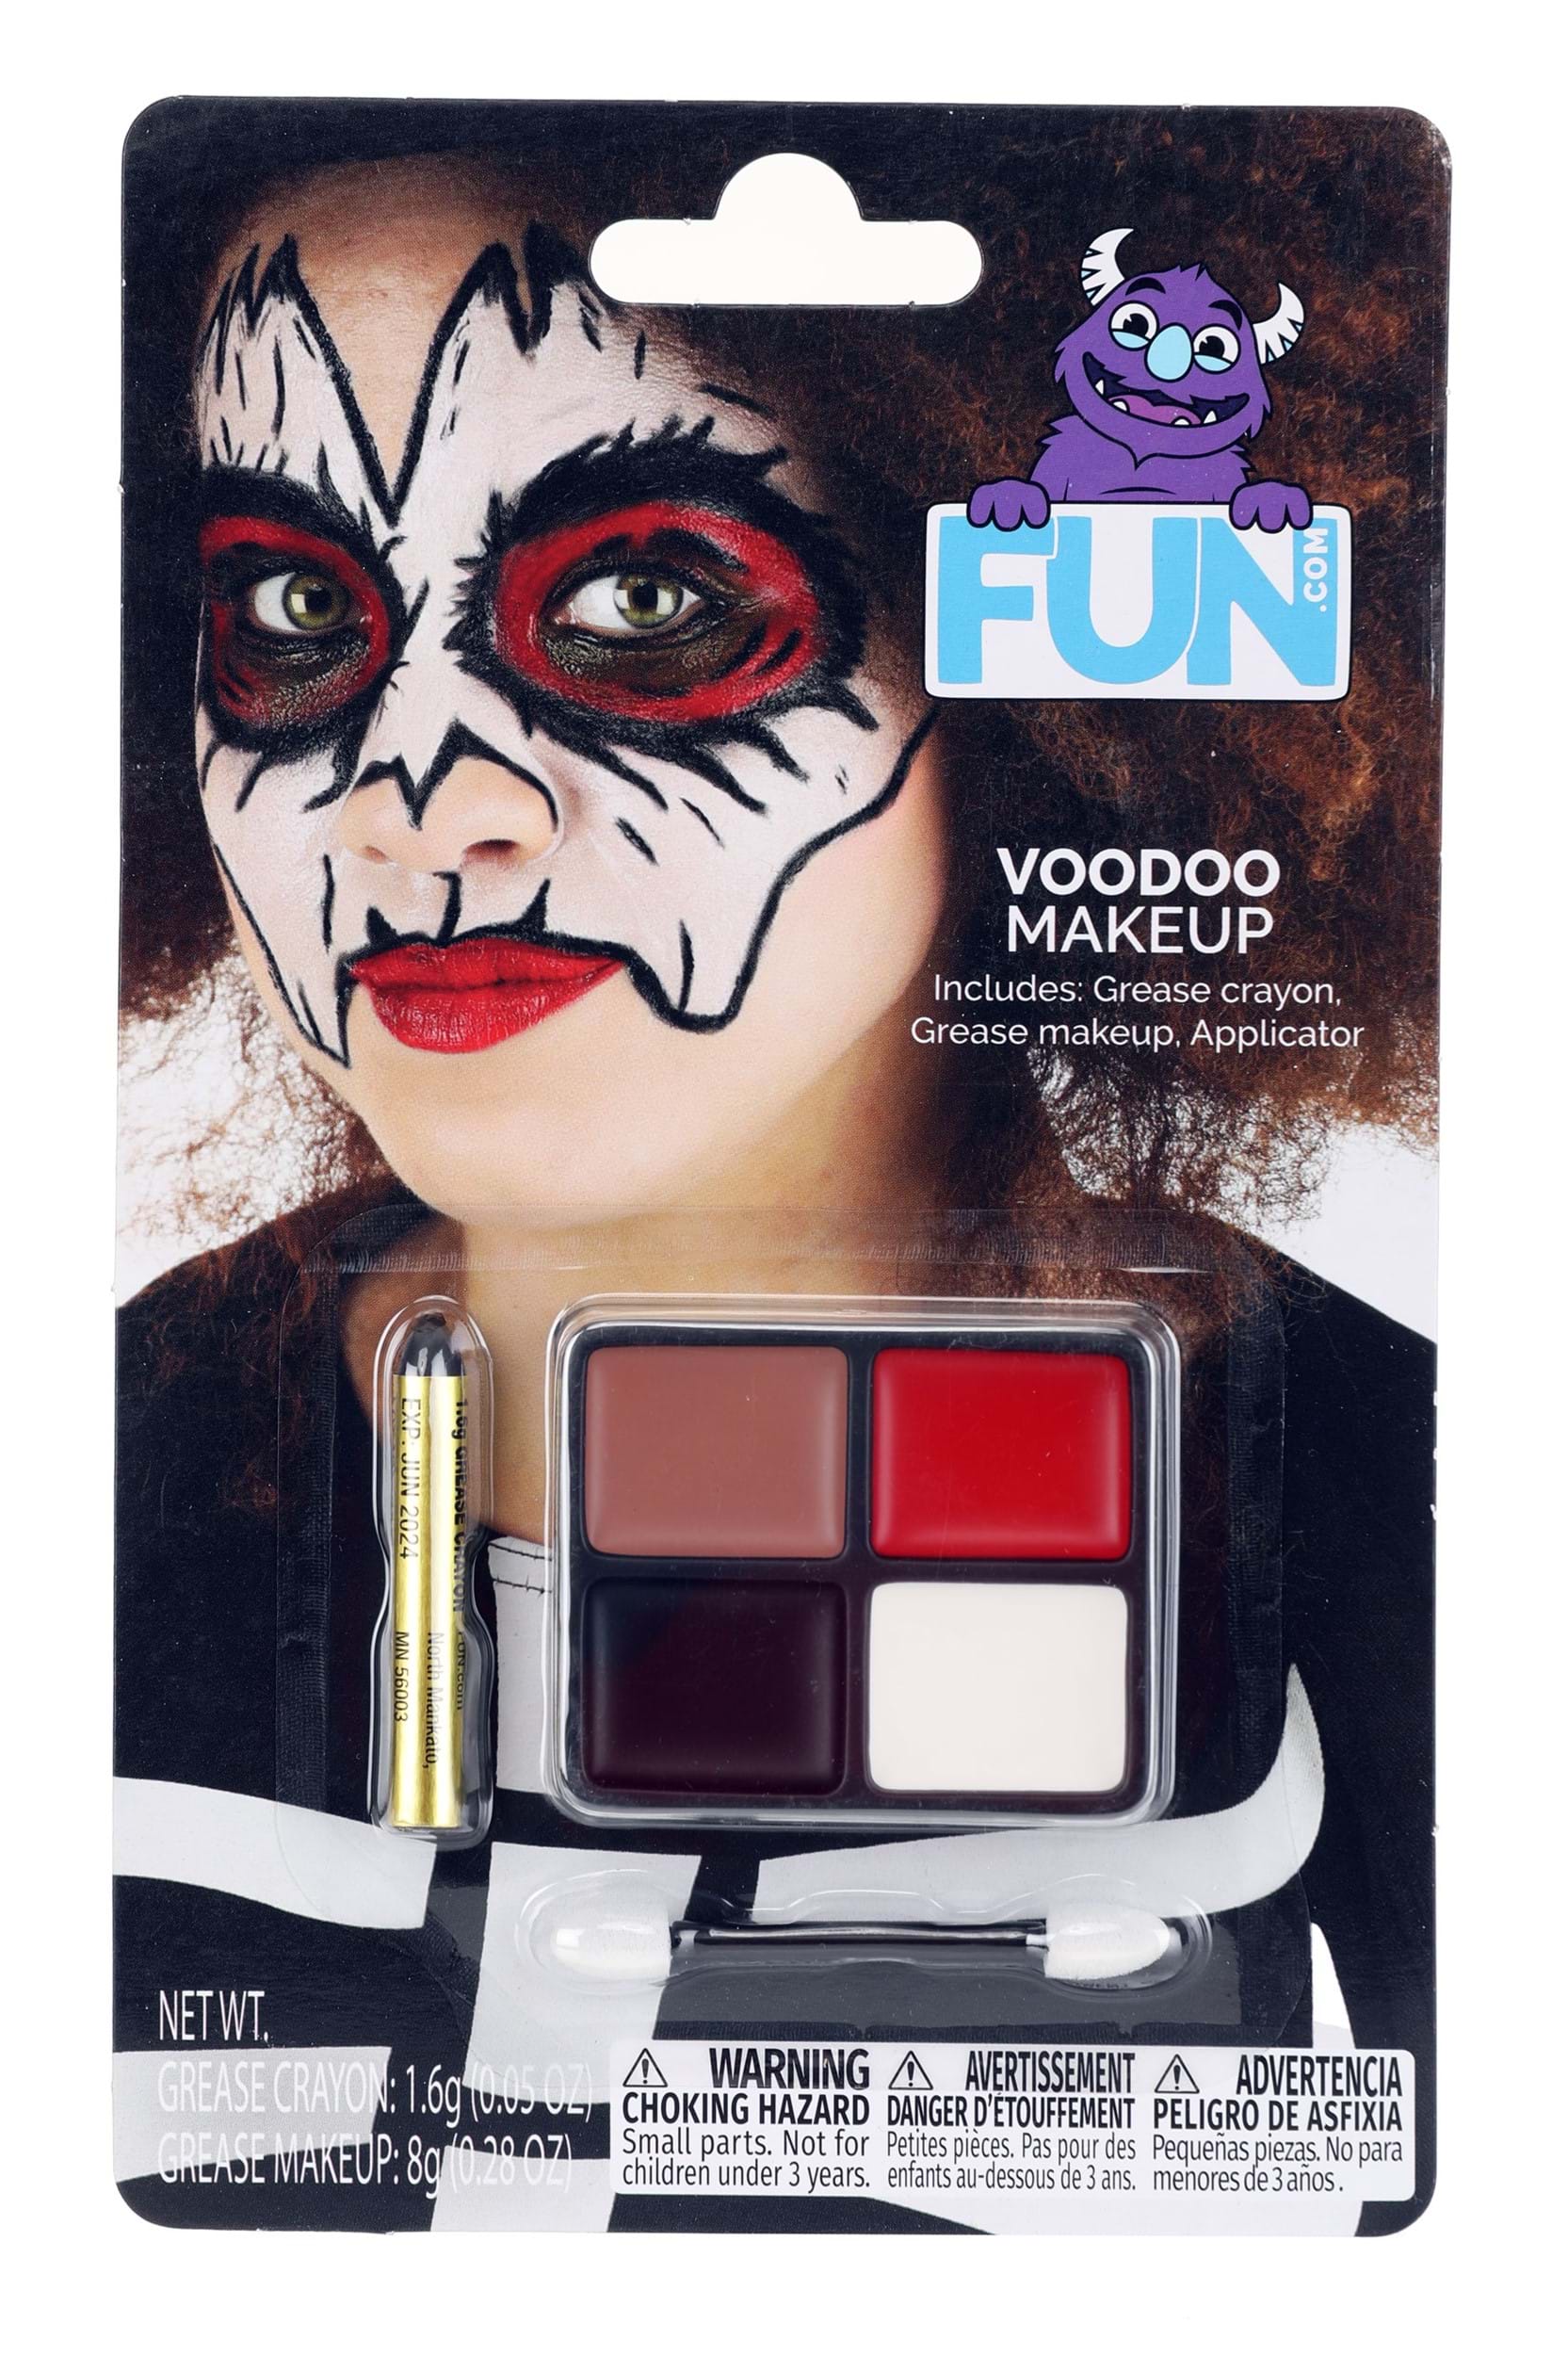 eftermiddag assimilation flertal Voodoo Exclusive Makeup Kit